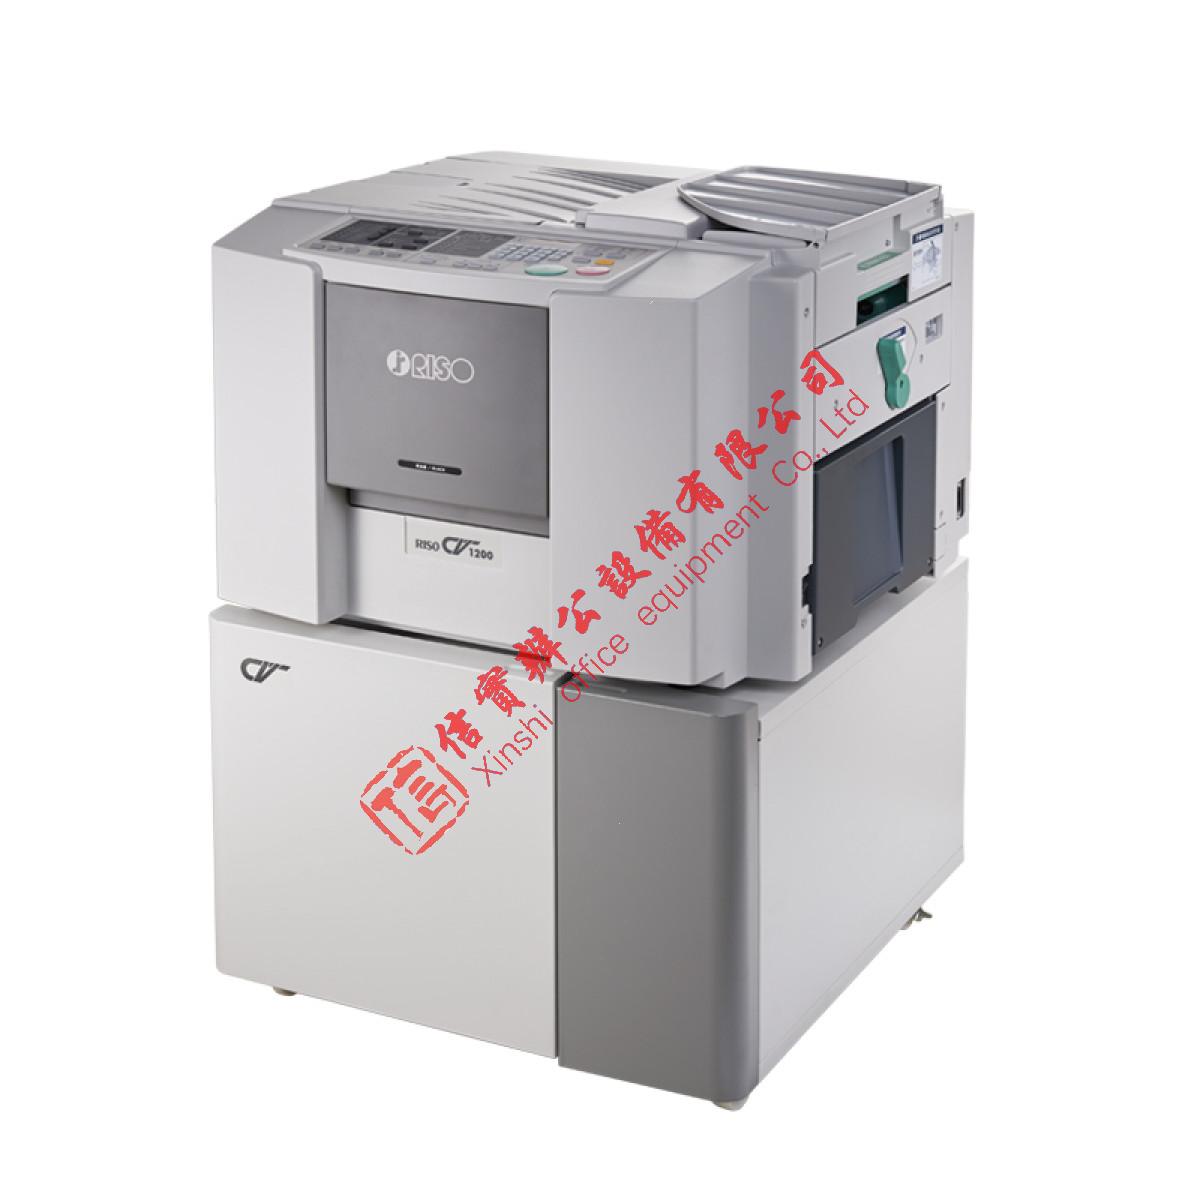 理想（RISO）理想 RISO CV1200C 一体化速印机(此产品不包含耗材，含底台)